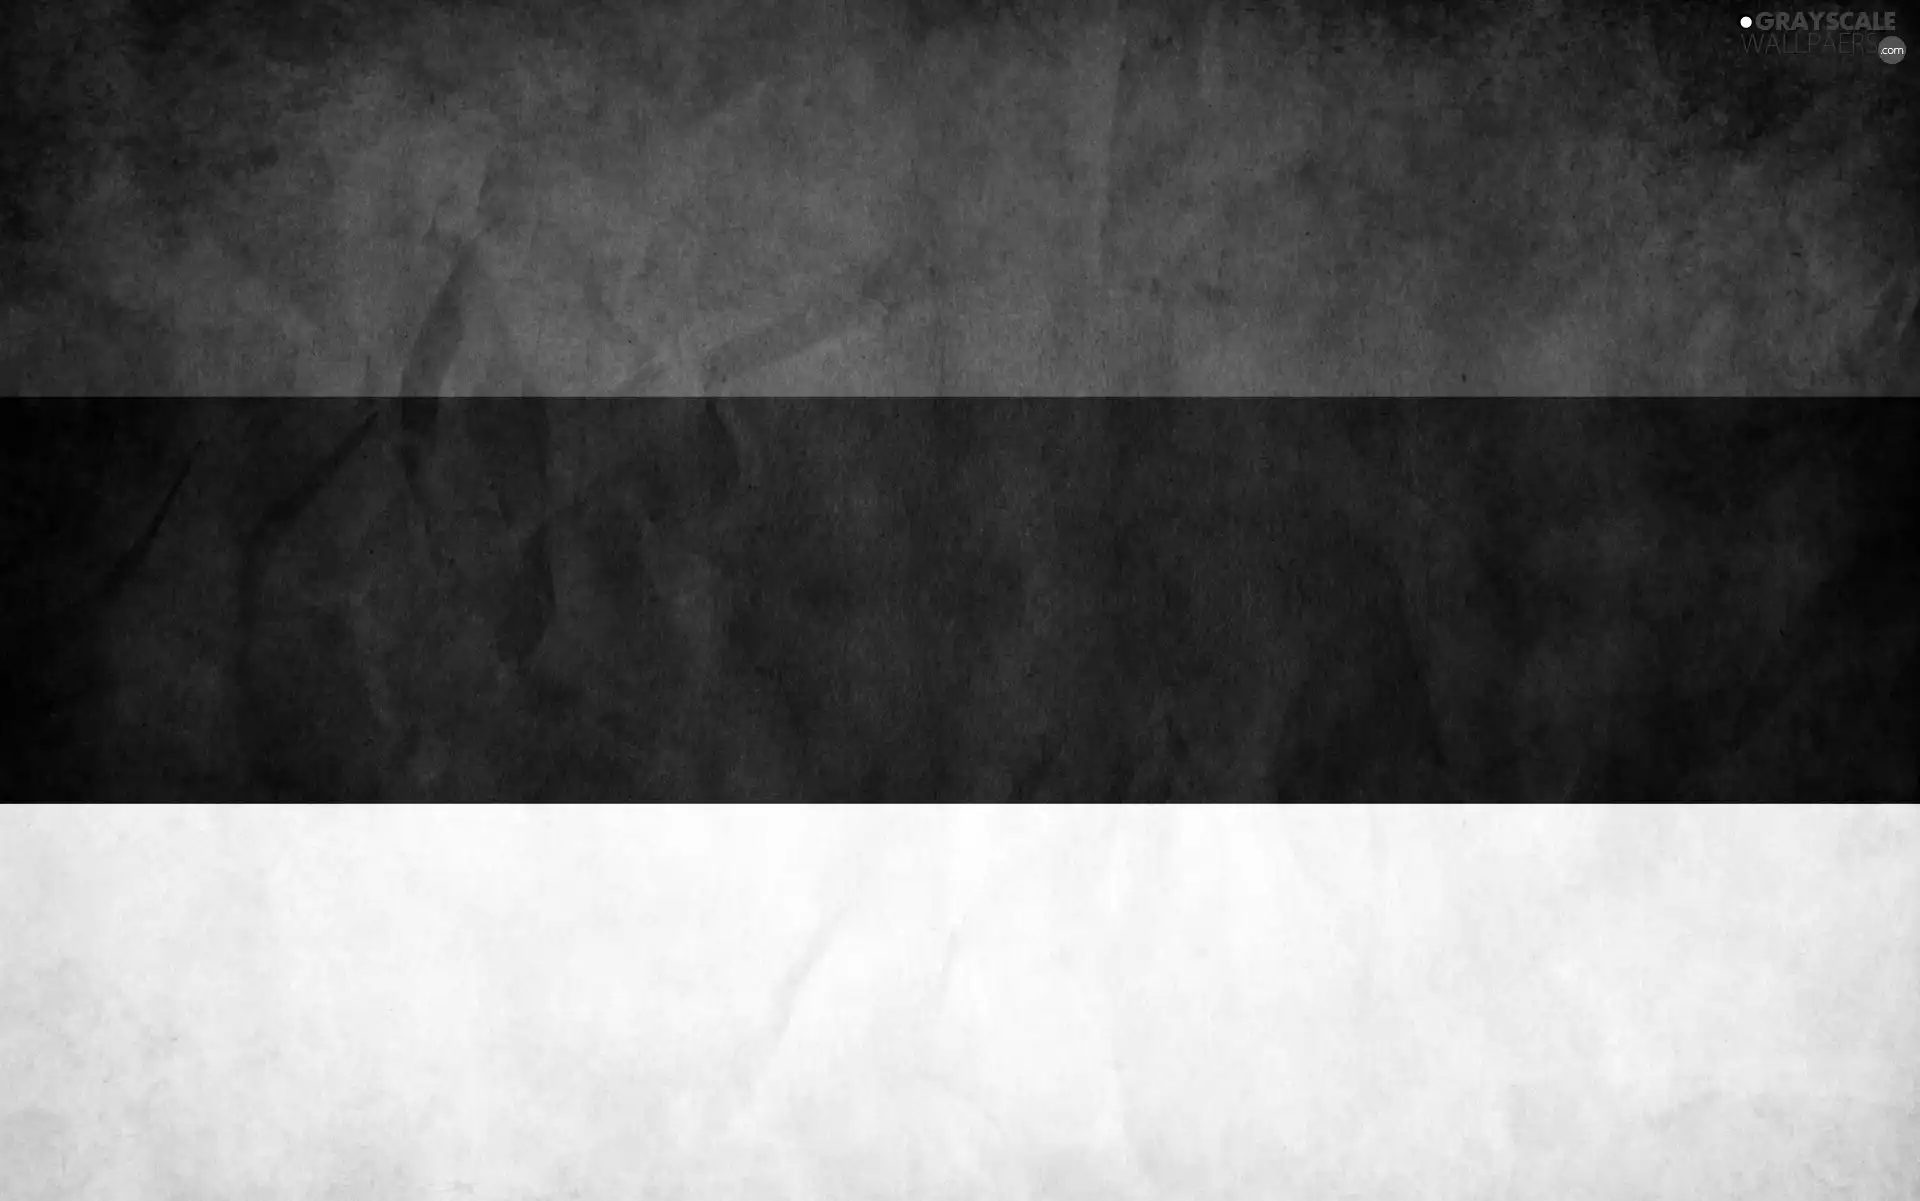 Estonia, flag, Member